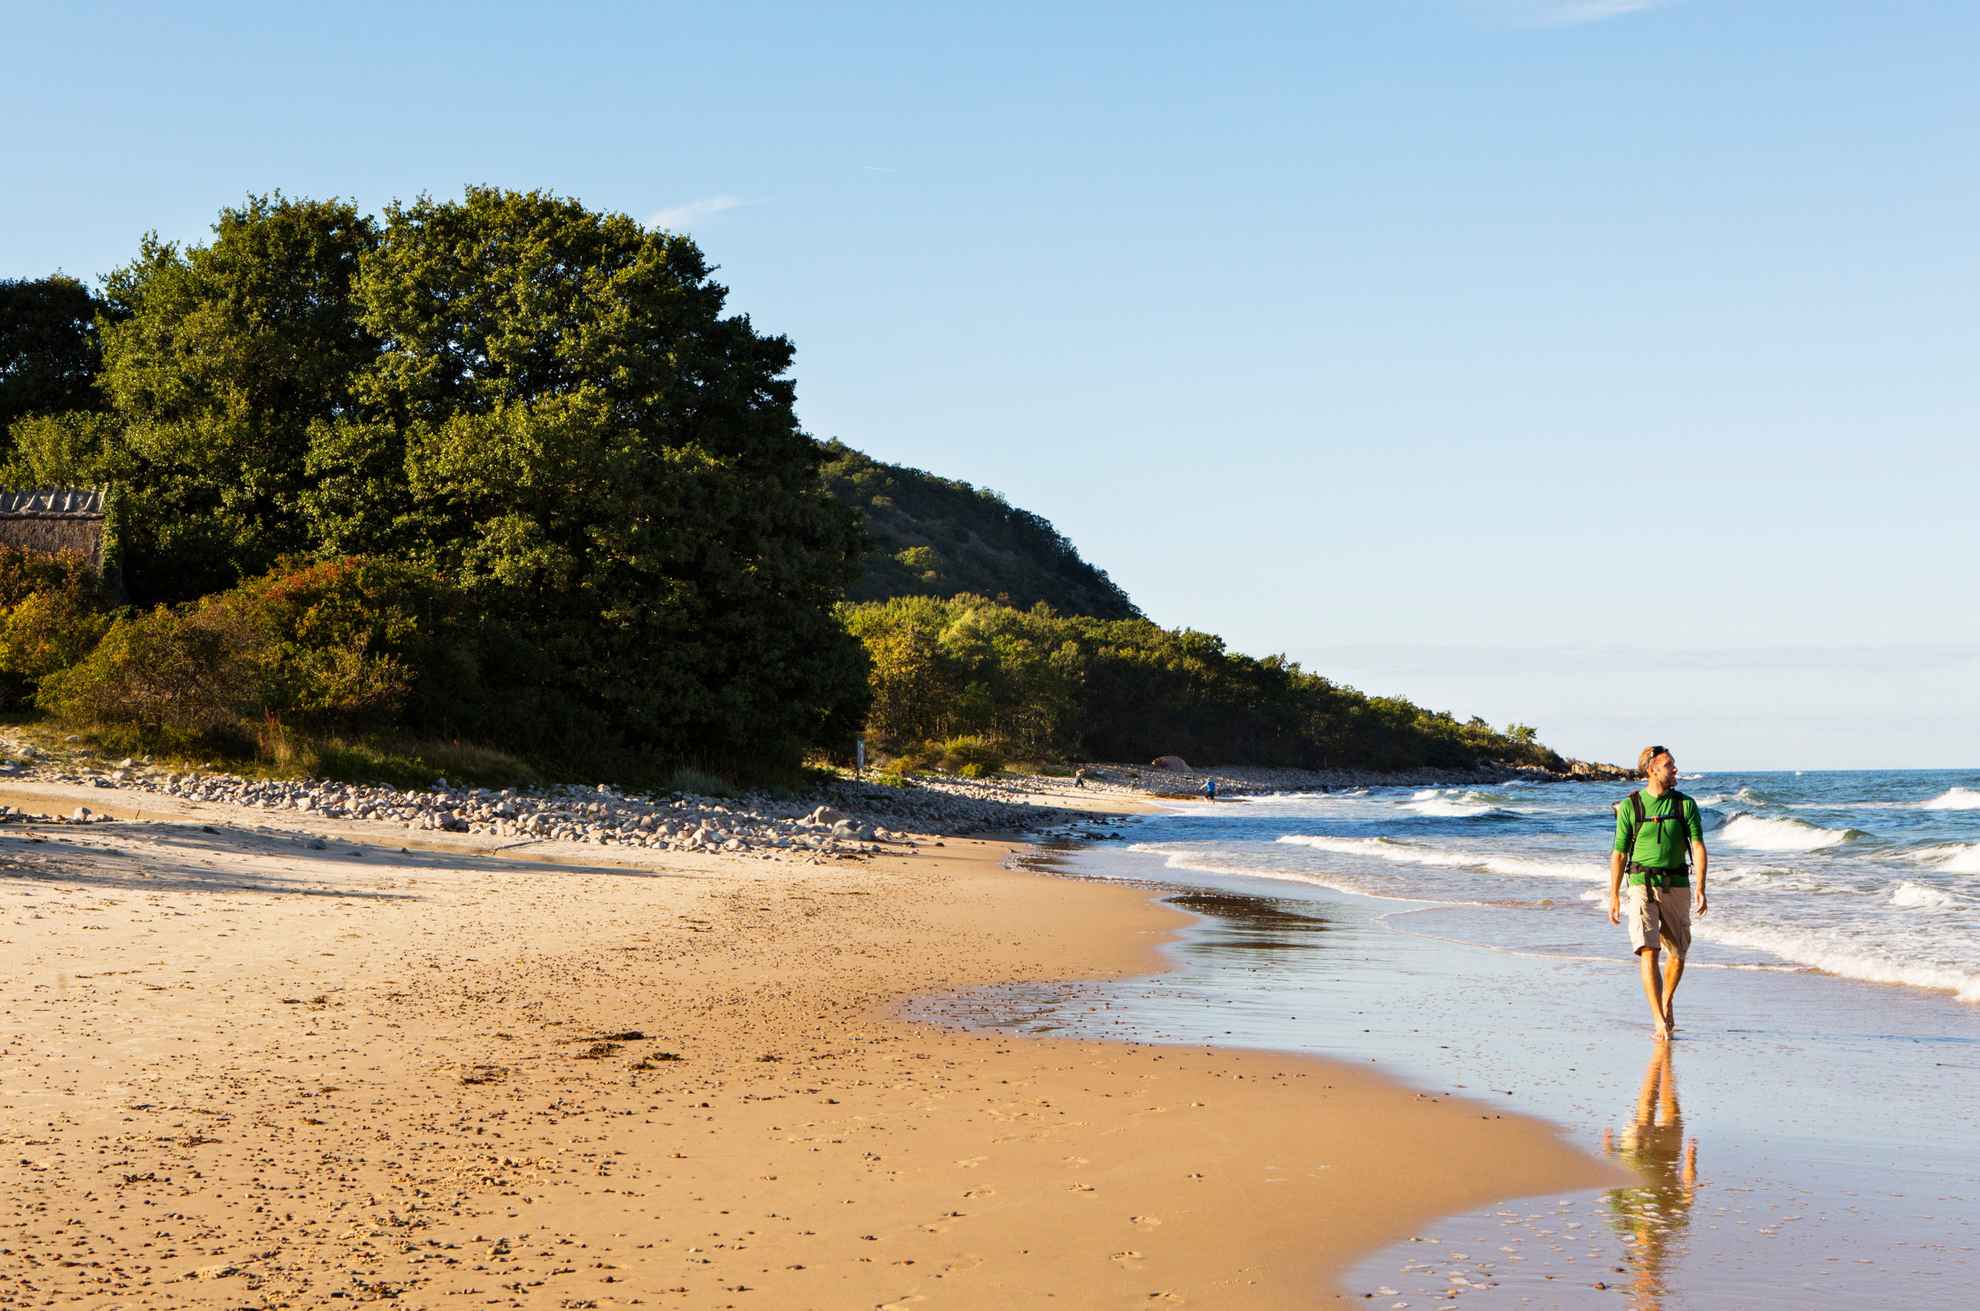 A man walks along the beach on a sunny day.